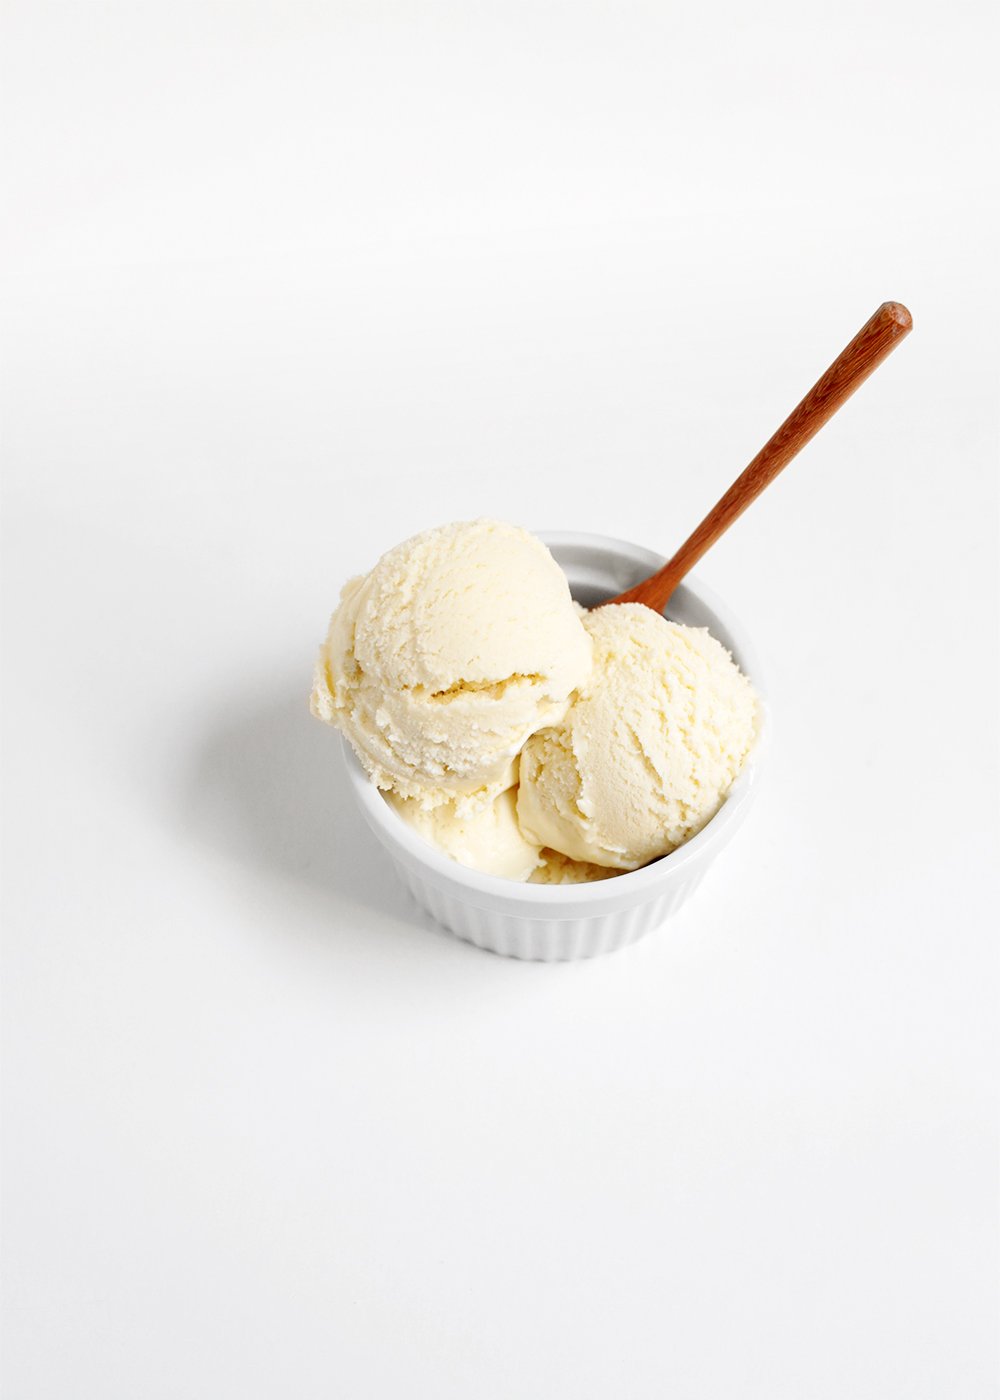 Creamy vanilla ice cream recipe from the faux martha